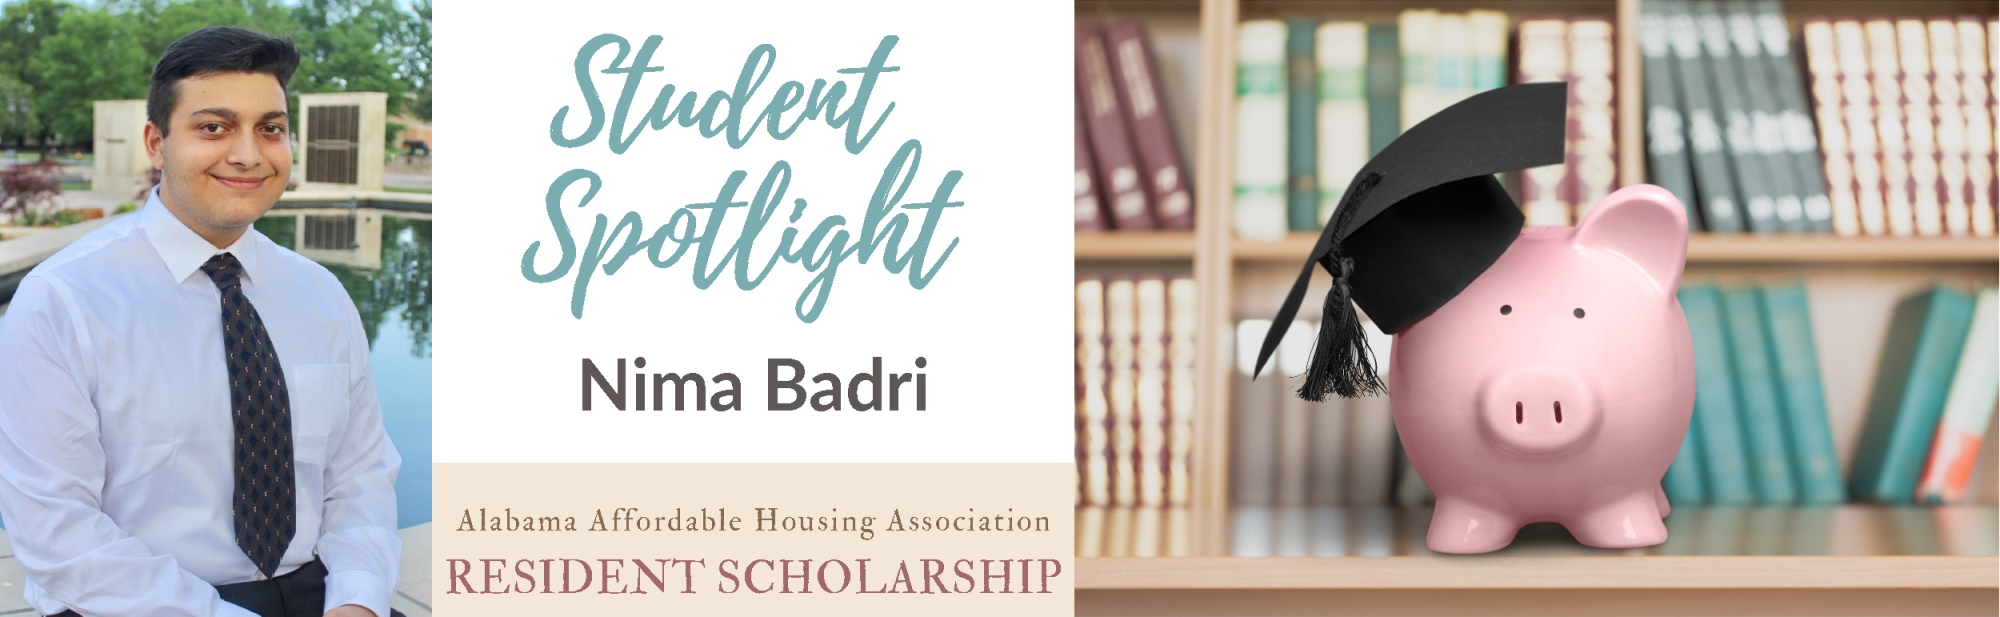 Nima Badri Student Spotlight